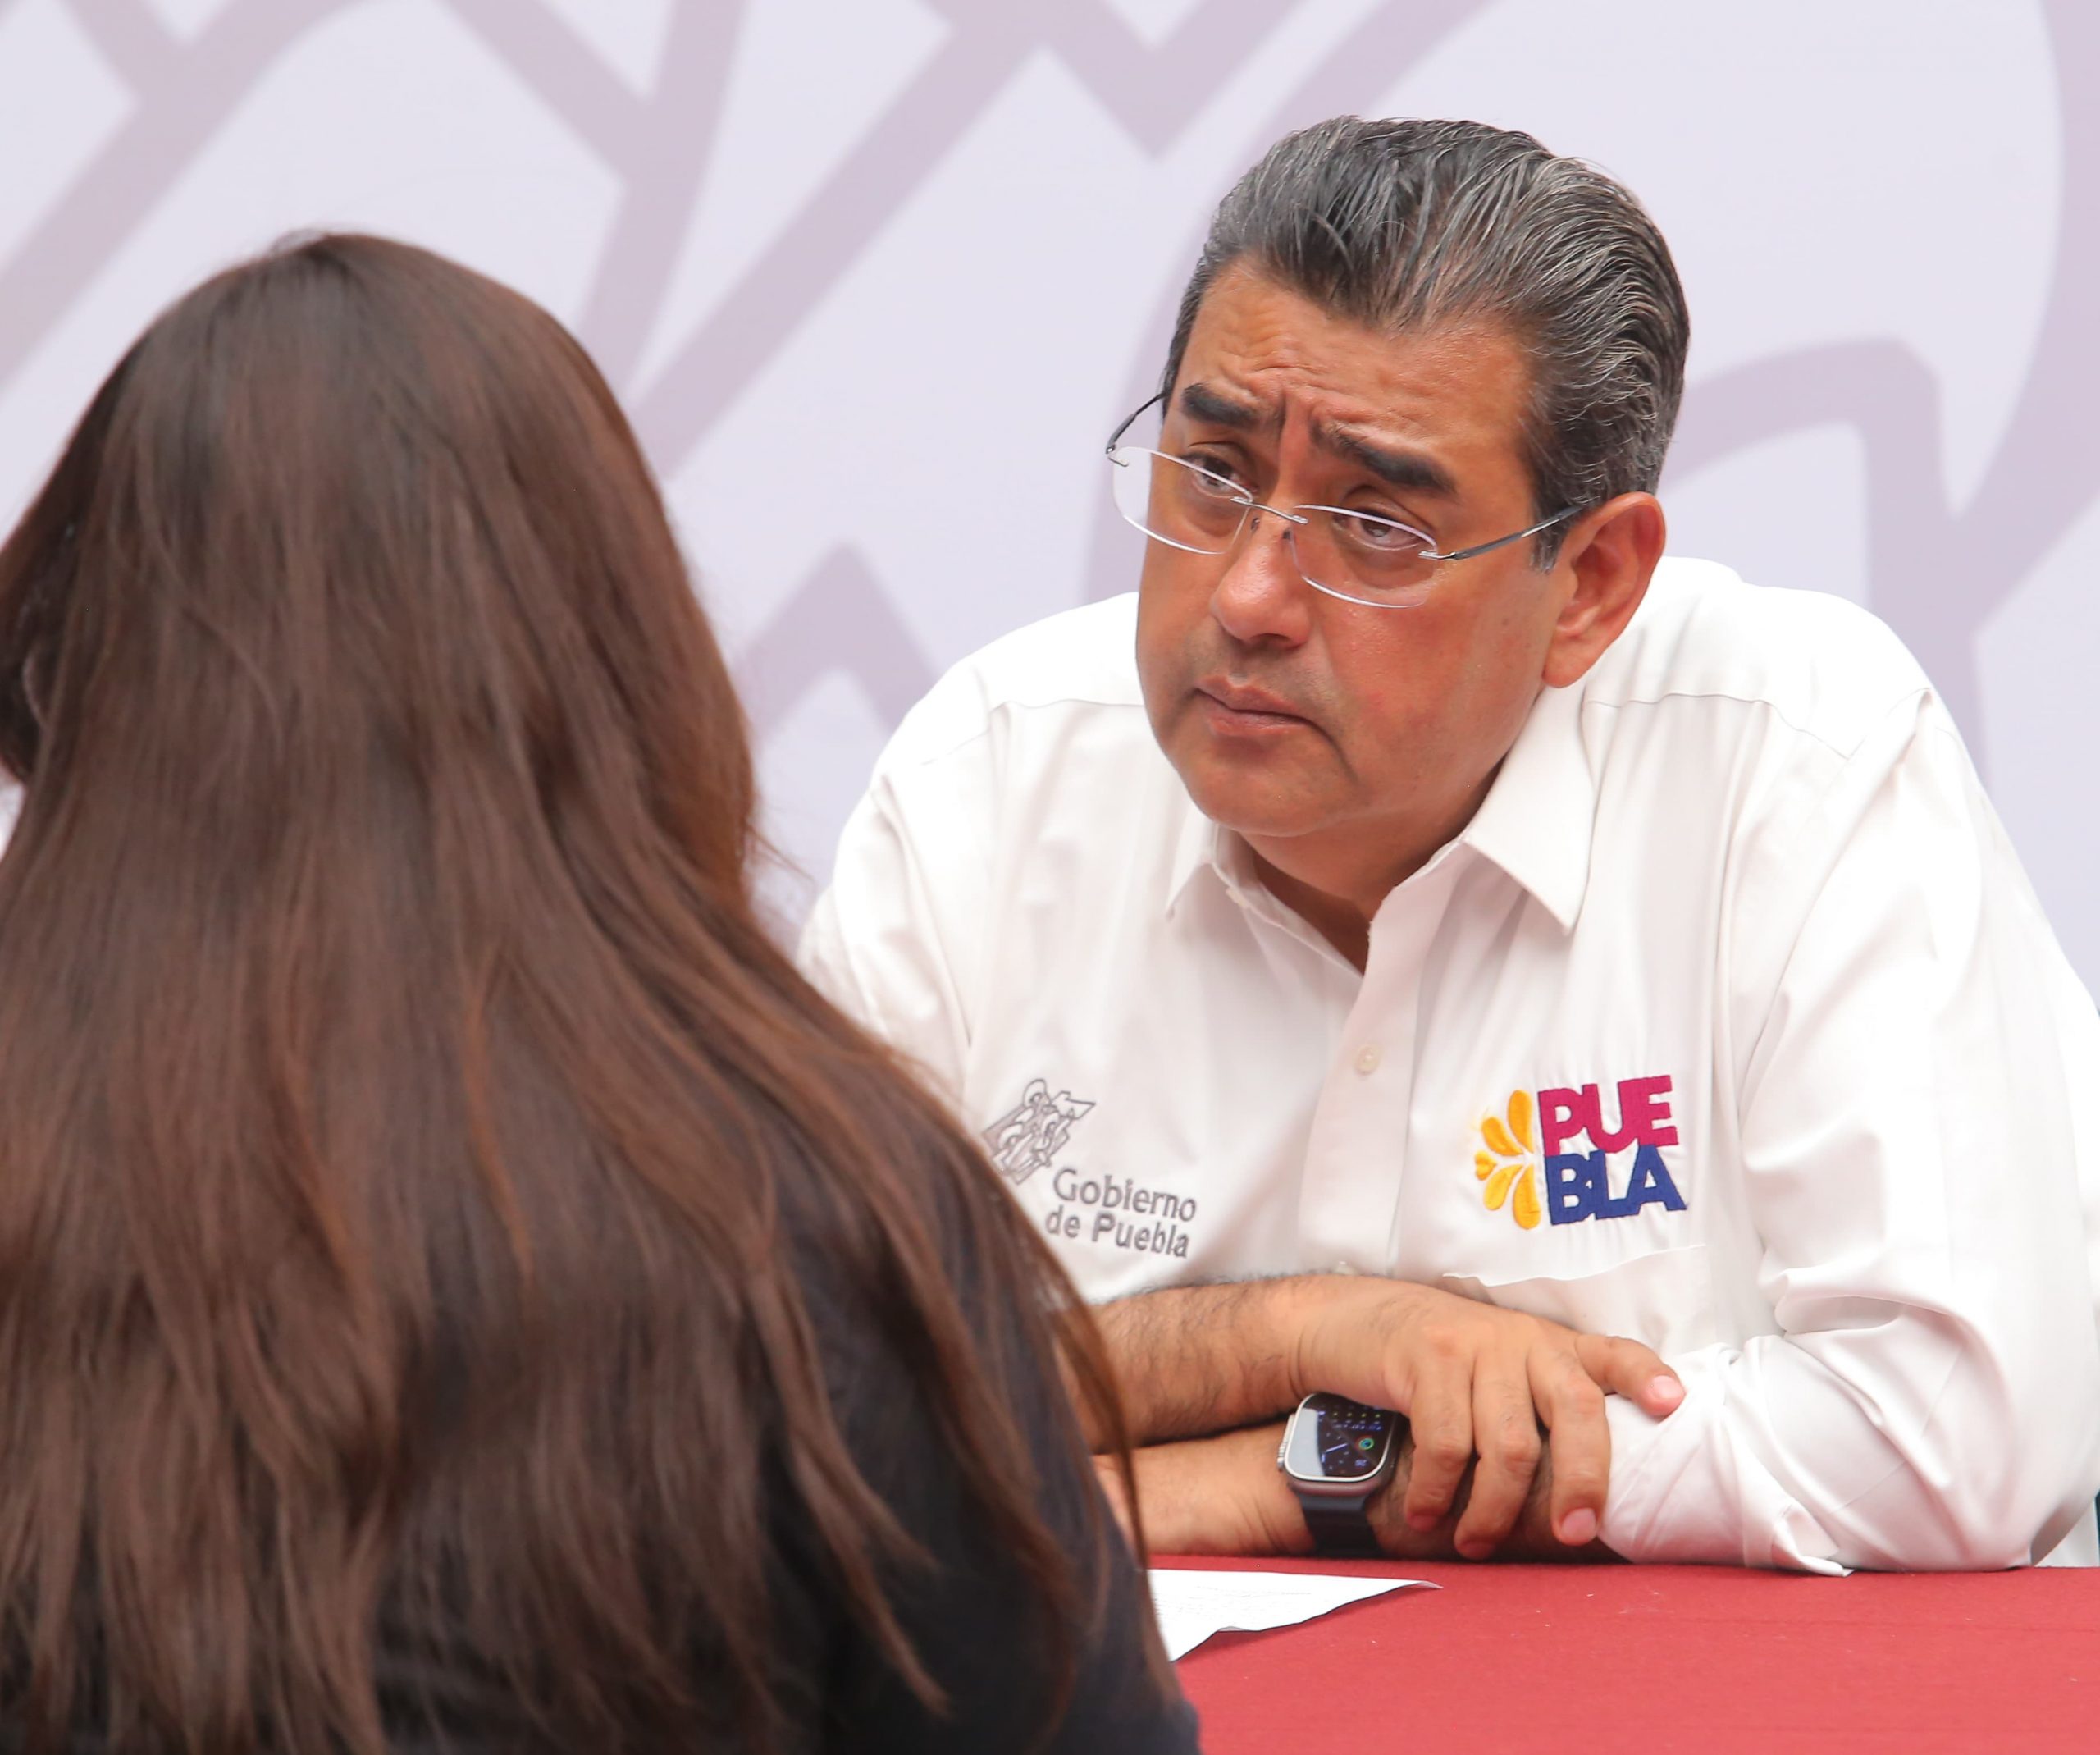 Fotonota: Aparatos ortopédicos y programas sociales, piden al gobernador Sergio Salomón Céspedes en la jornada ciudadana